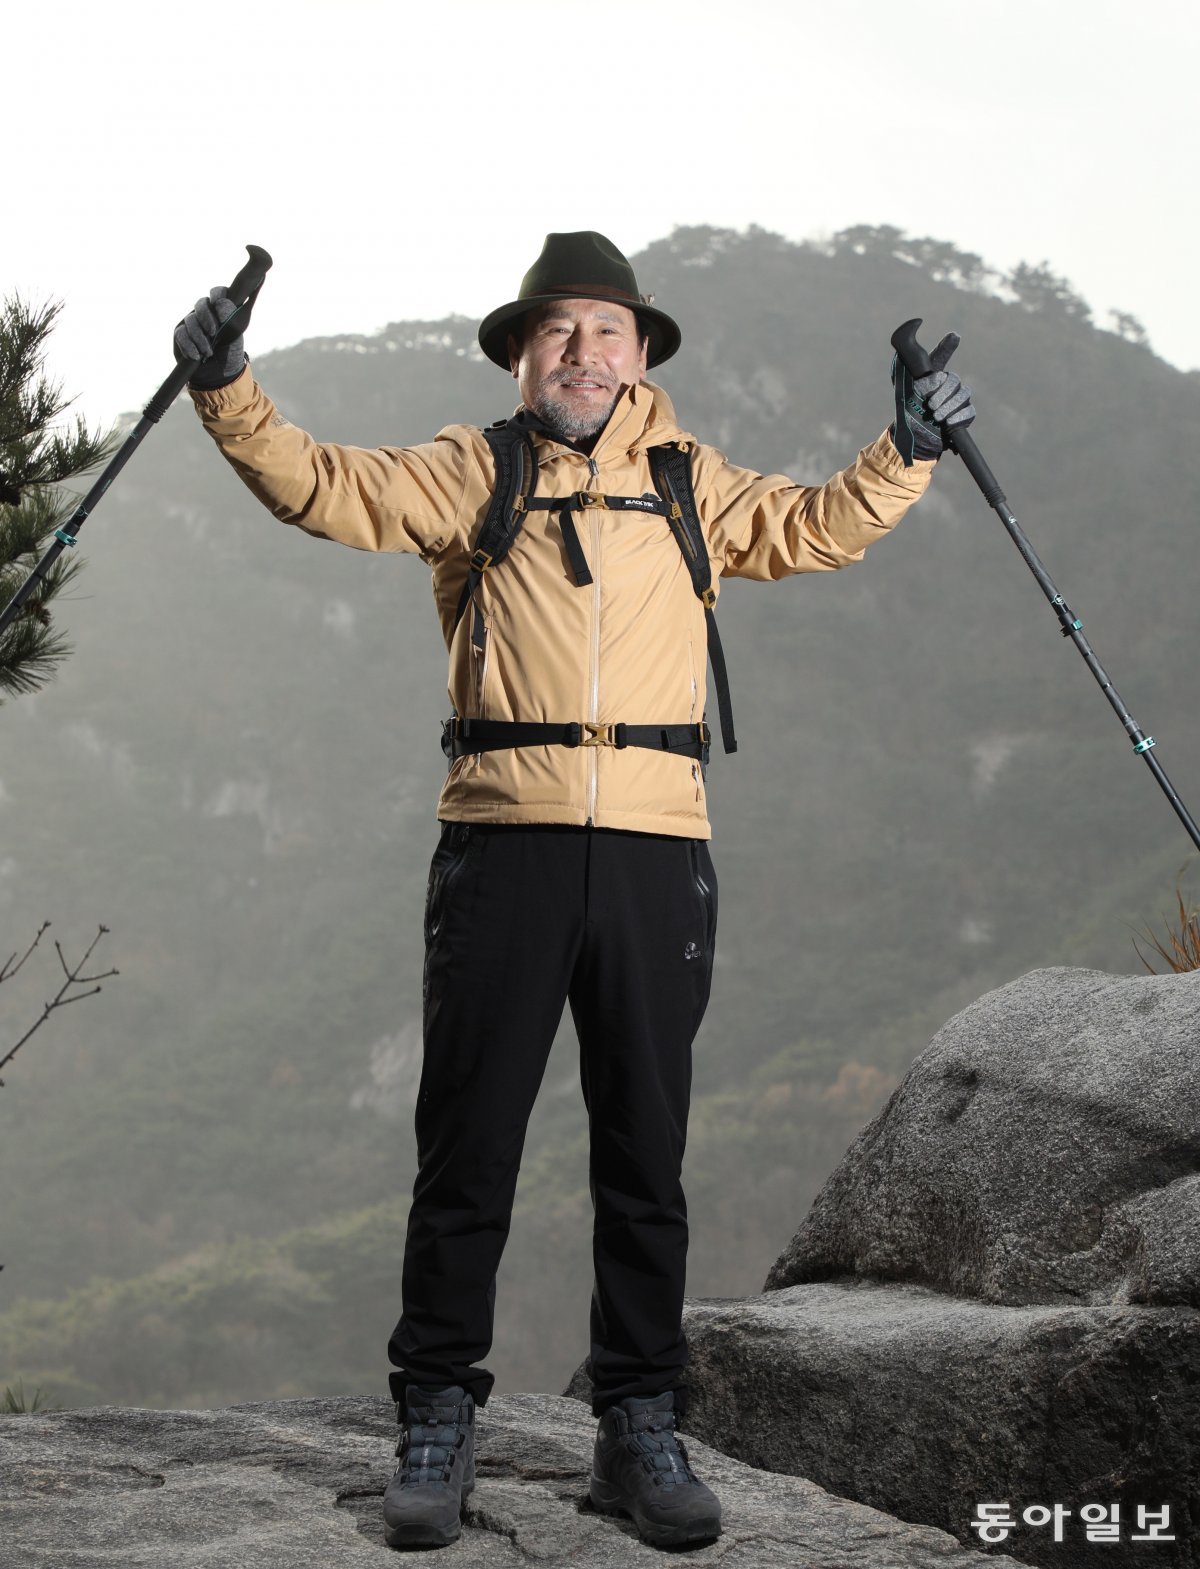 임영순 회장이 서울 북악산을 오르다 양팔을 들어올리고 있다. 20대 후반 망가진 몸을 되살리기 위해 등산을 시작한 그는 40년 가까이 산을 타며 건강한 노년을 만들어 가고 있다. 신원건 기자 laputa@donga.com